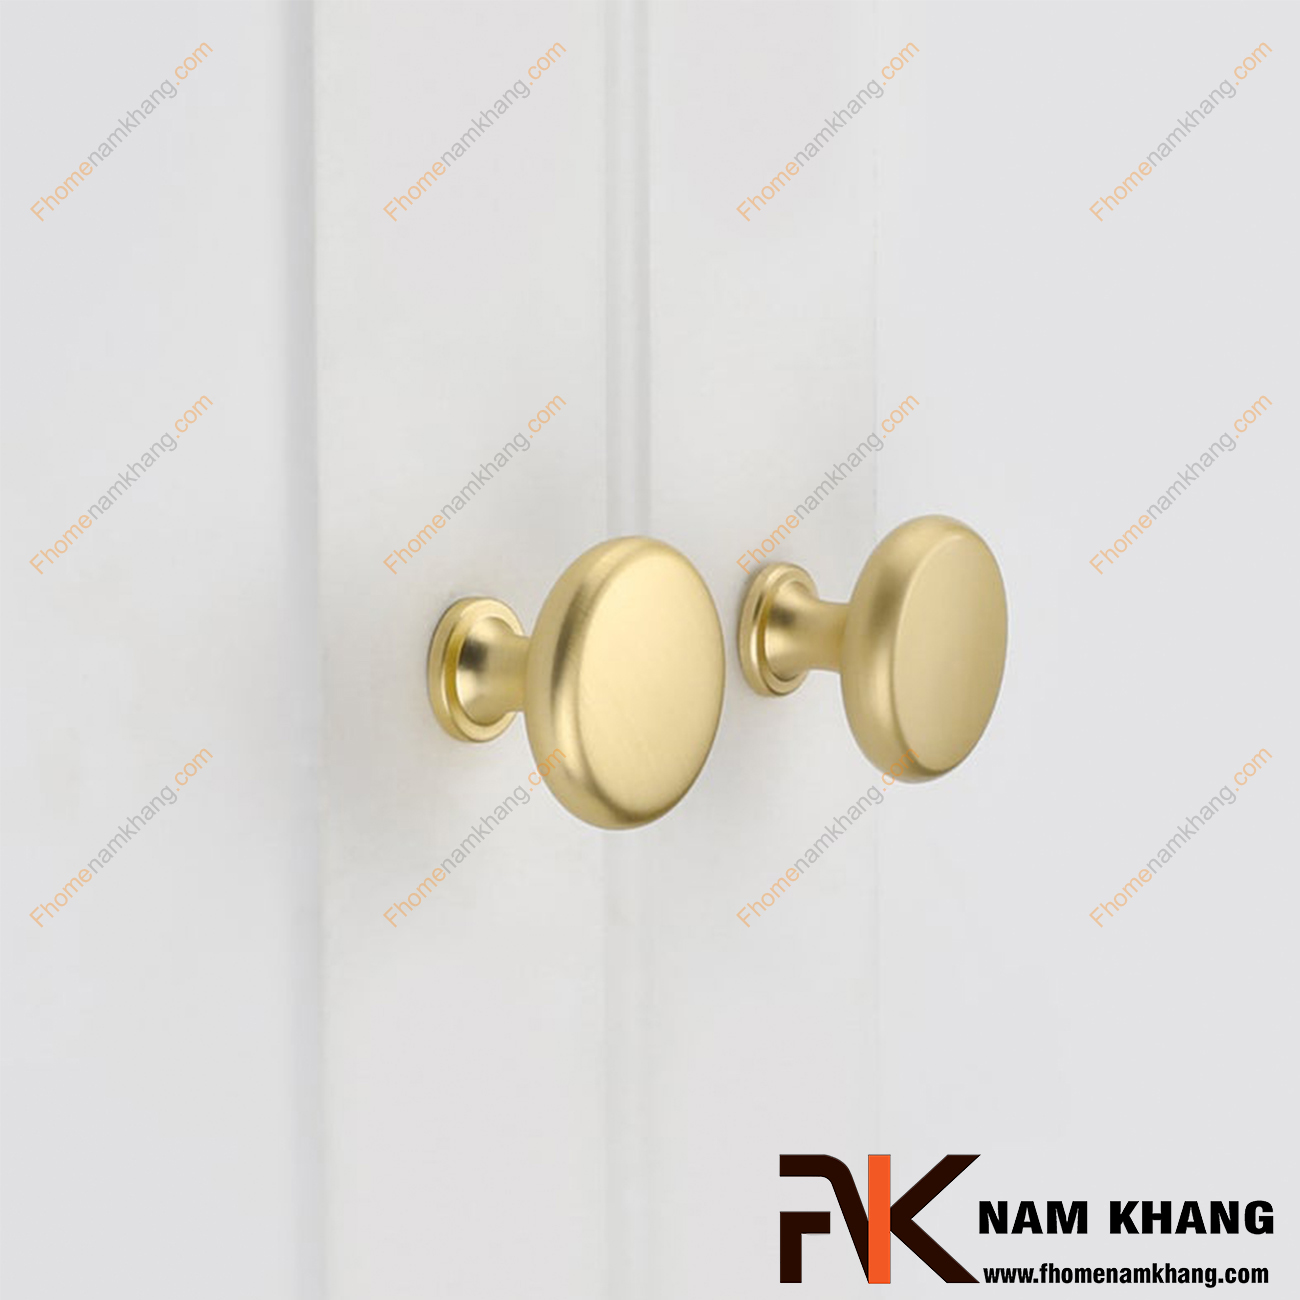 Núm cửa tủ dạng tròn vàng mờ NK211-VM - sản phẩm phụ kiện tủ nhỏ gọn thiết kế đơn giản bo tròn nhẹ nàng và sỡ hữu màu mạ mờ ấn tượng dễ dàng phối hợp.